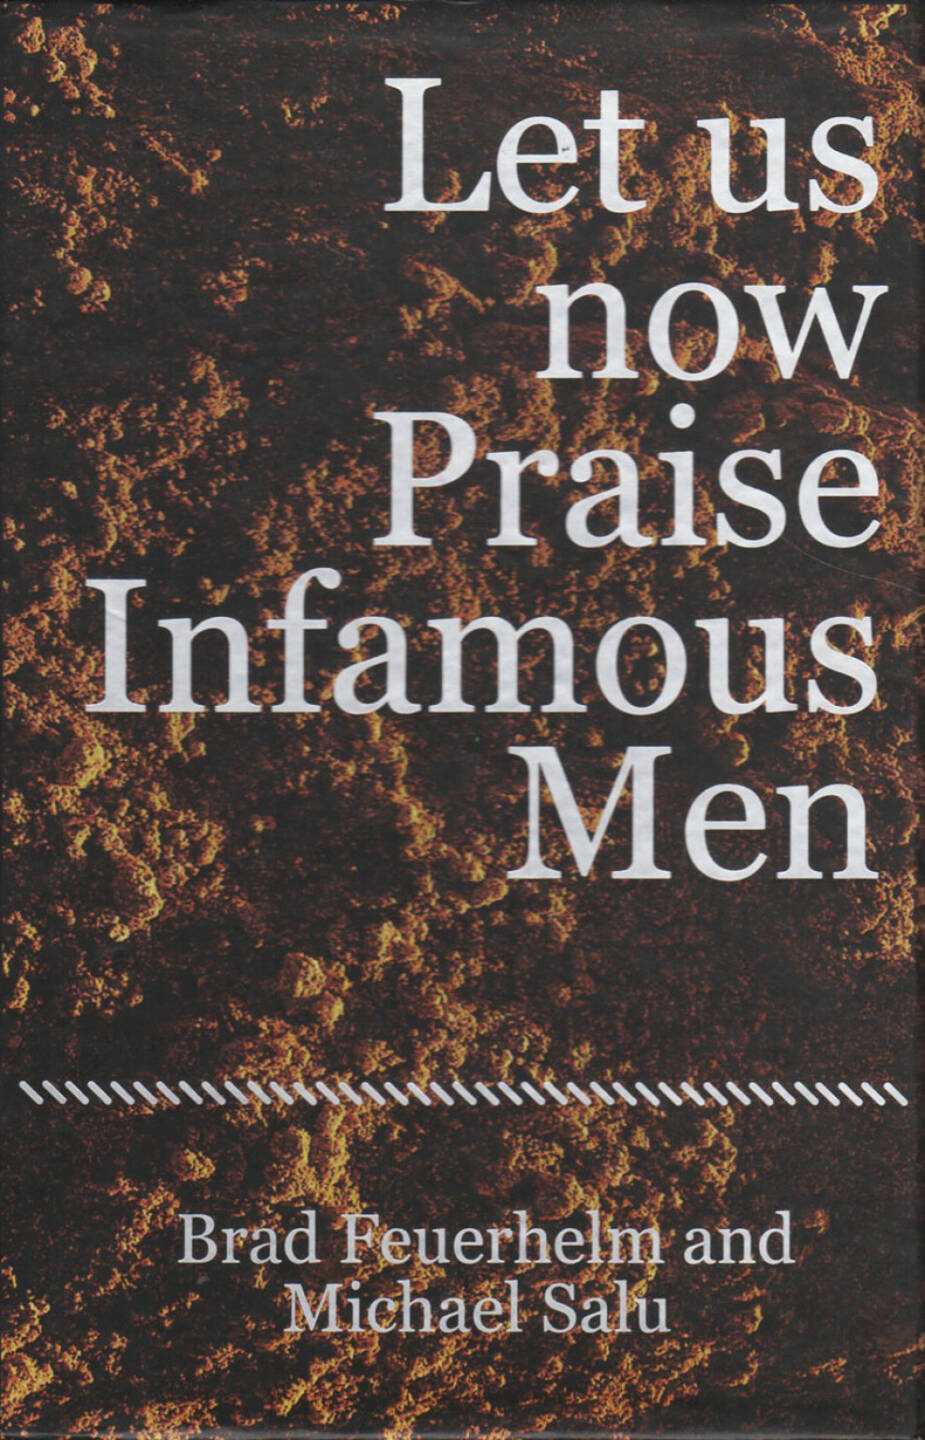 Brad Feuerhelm - Let us now Praise Infamous Men, Paralaxe Editions 2014, Cover - http://josefchladek.com/book/brad_feuerhelm_-_let_us_now_praise_infamous_men